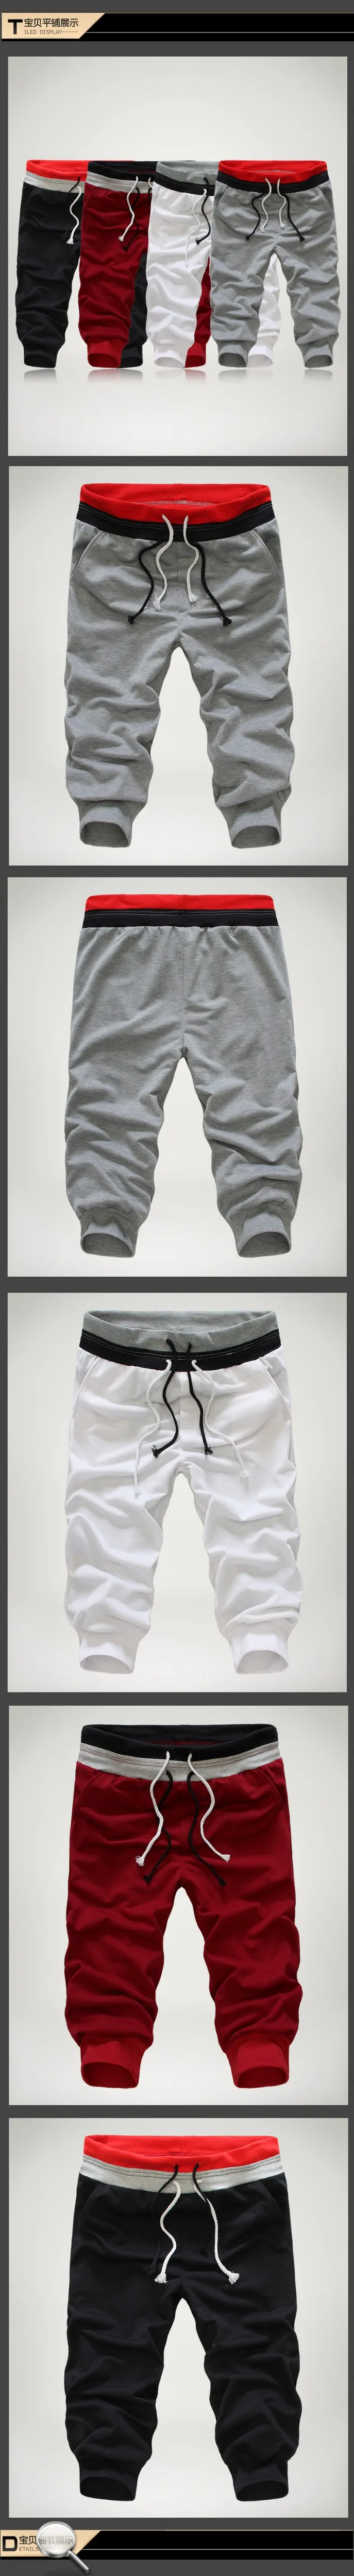 Весенний бренд Для мужчин s Штаны Повседневное уличные брюки штаны для бега Для мужчин, чистый цвет, для отдыха штаны мужские тренировочные брюки B025